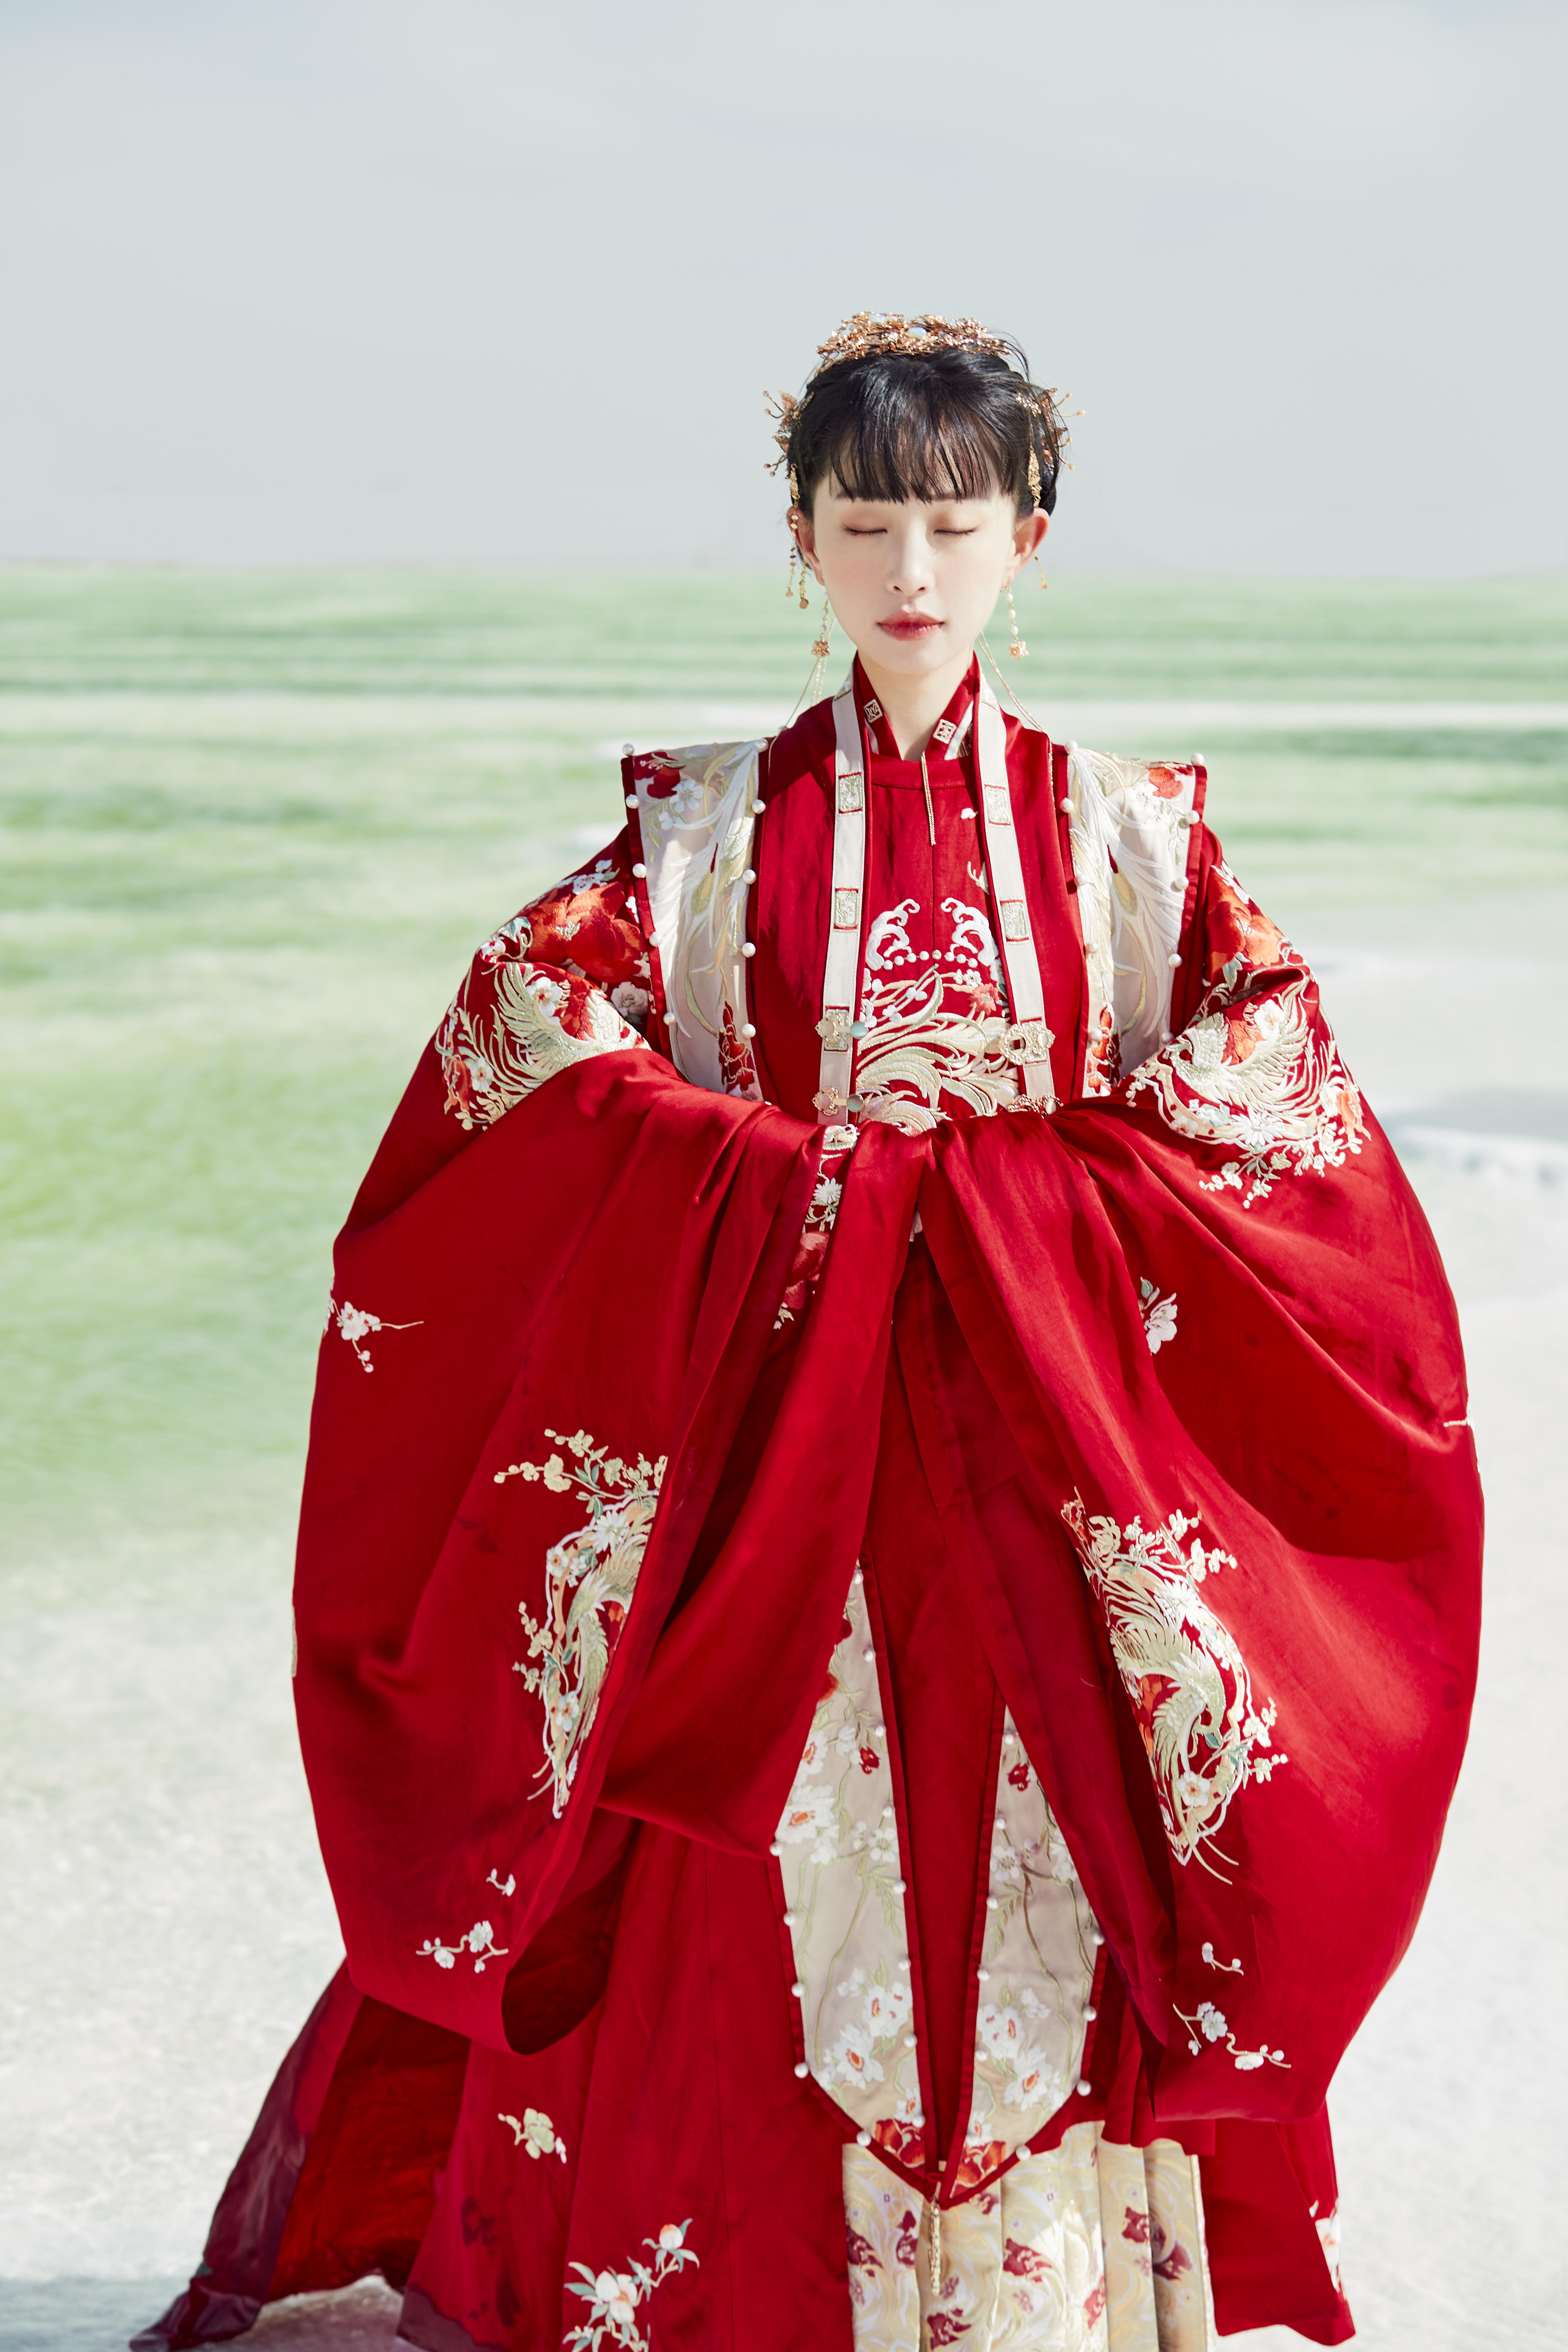 マニアの趣味が市民権 中国伝統衣装「漢服」が若者に大人気 | 36Kr 